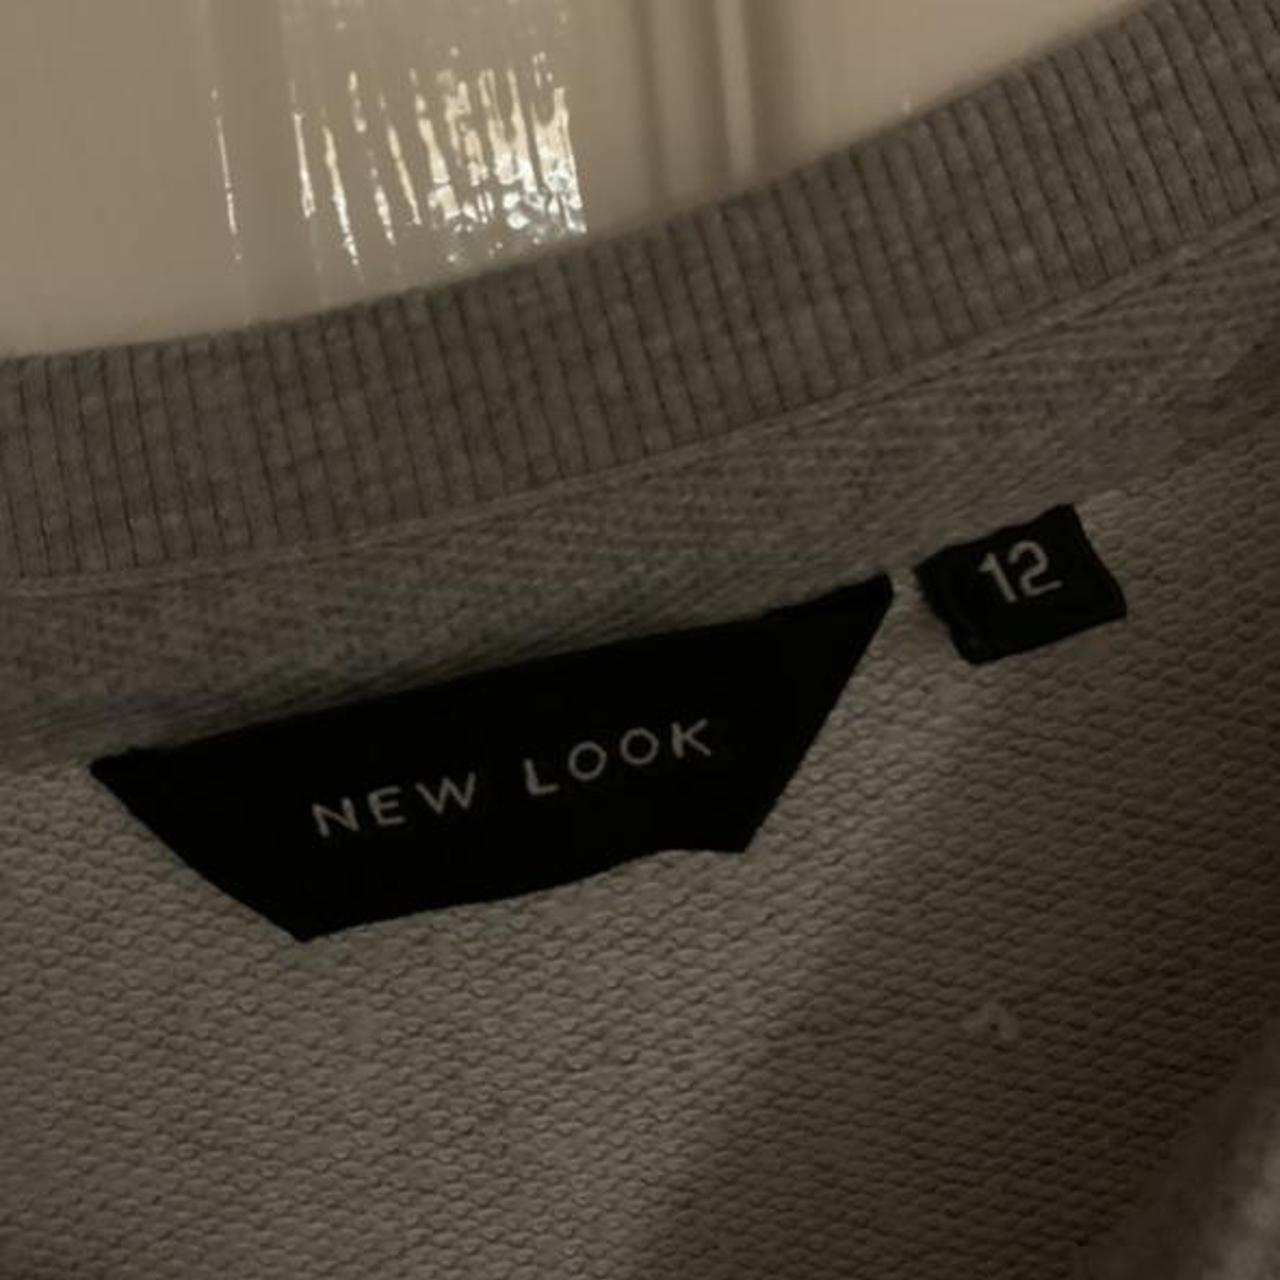 Product Image 2 - New look slogan sweatshirt size